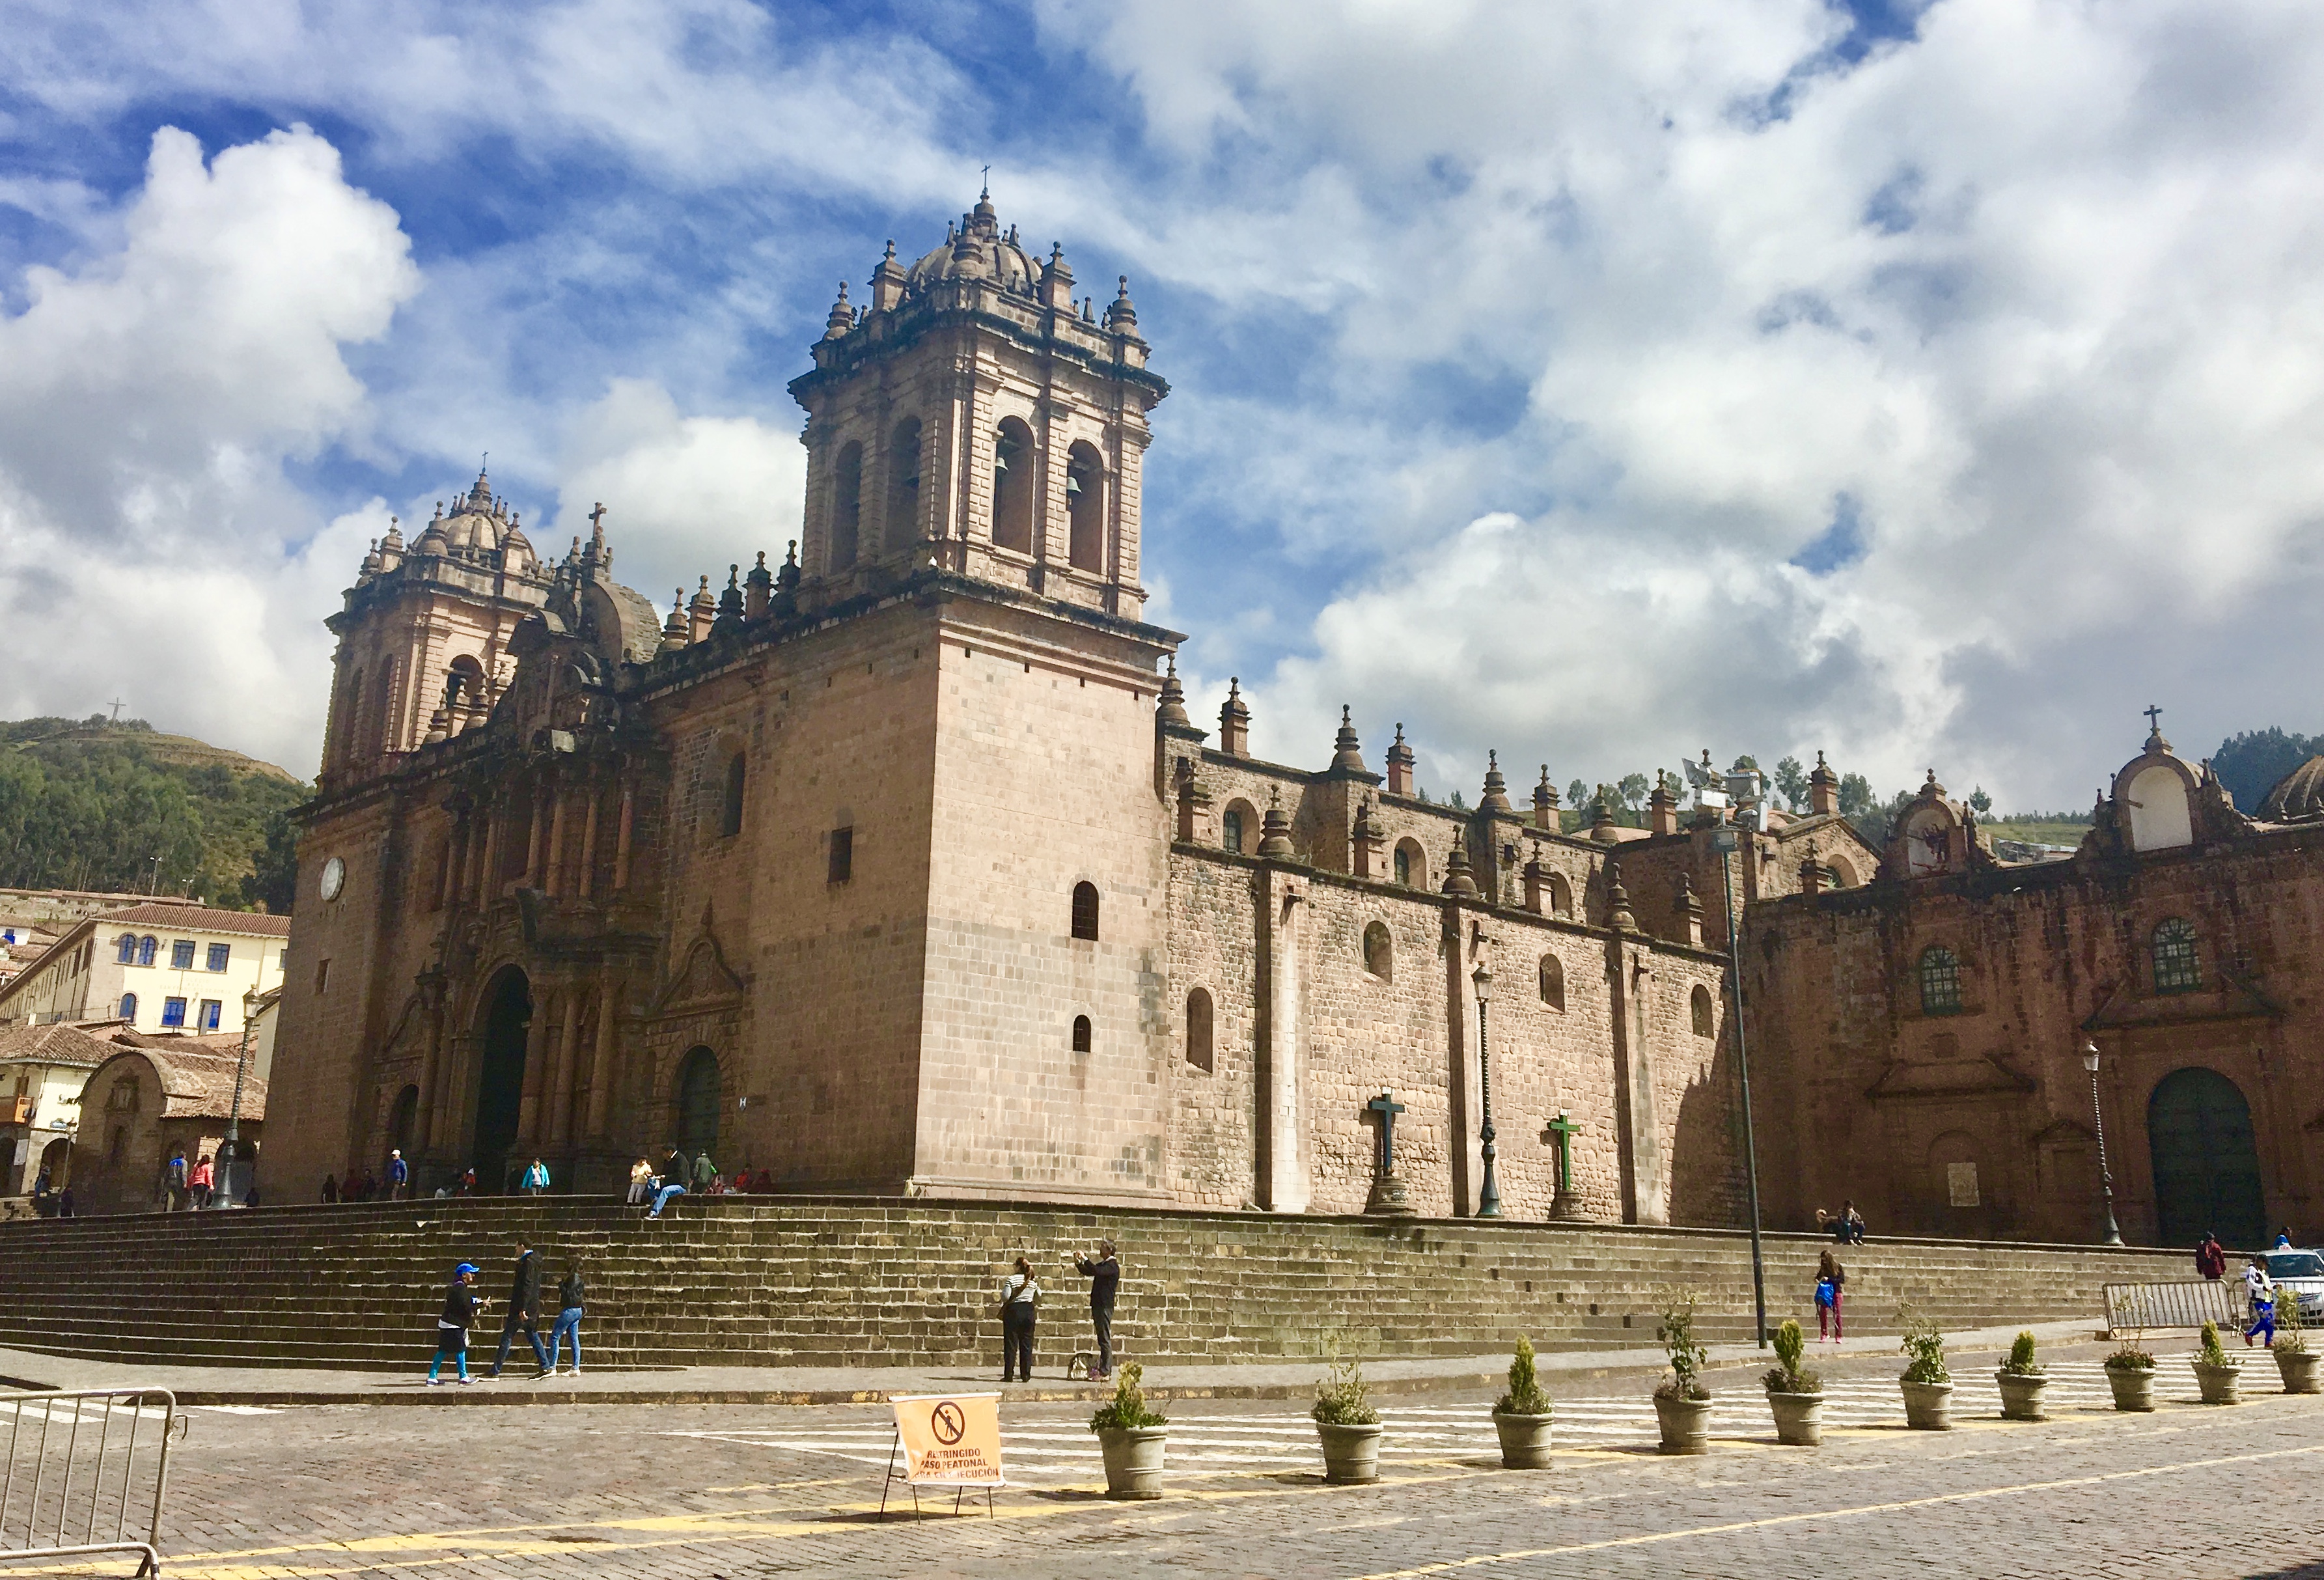 クスコ インカ帝国の首都クスコ旧市街地と聖なる谷 ウルルンバ の観光情報 旅ログ